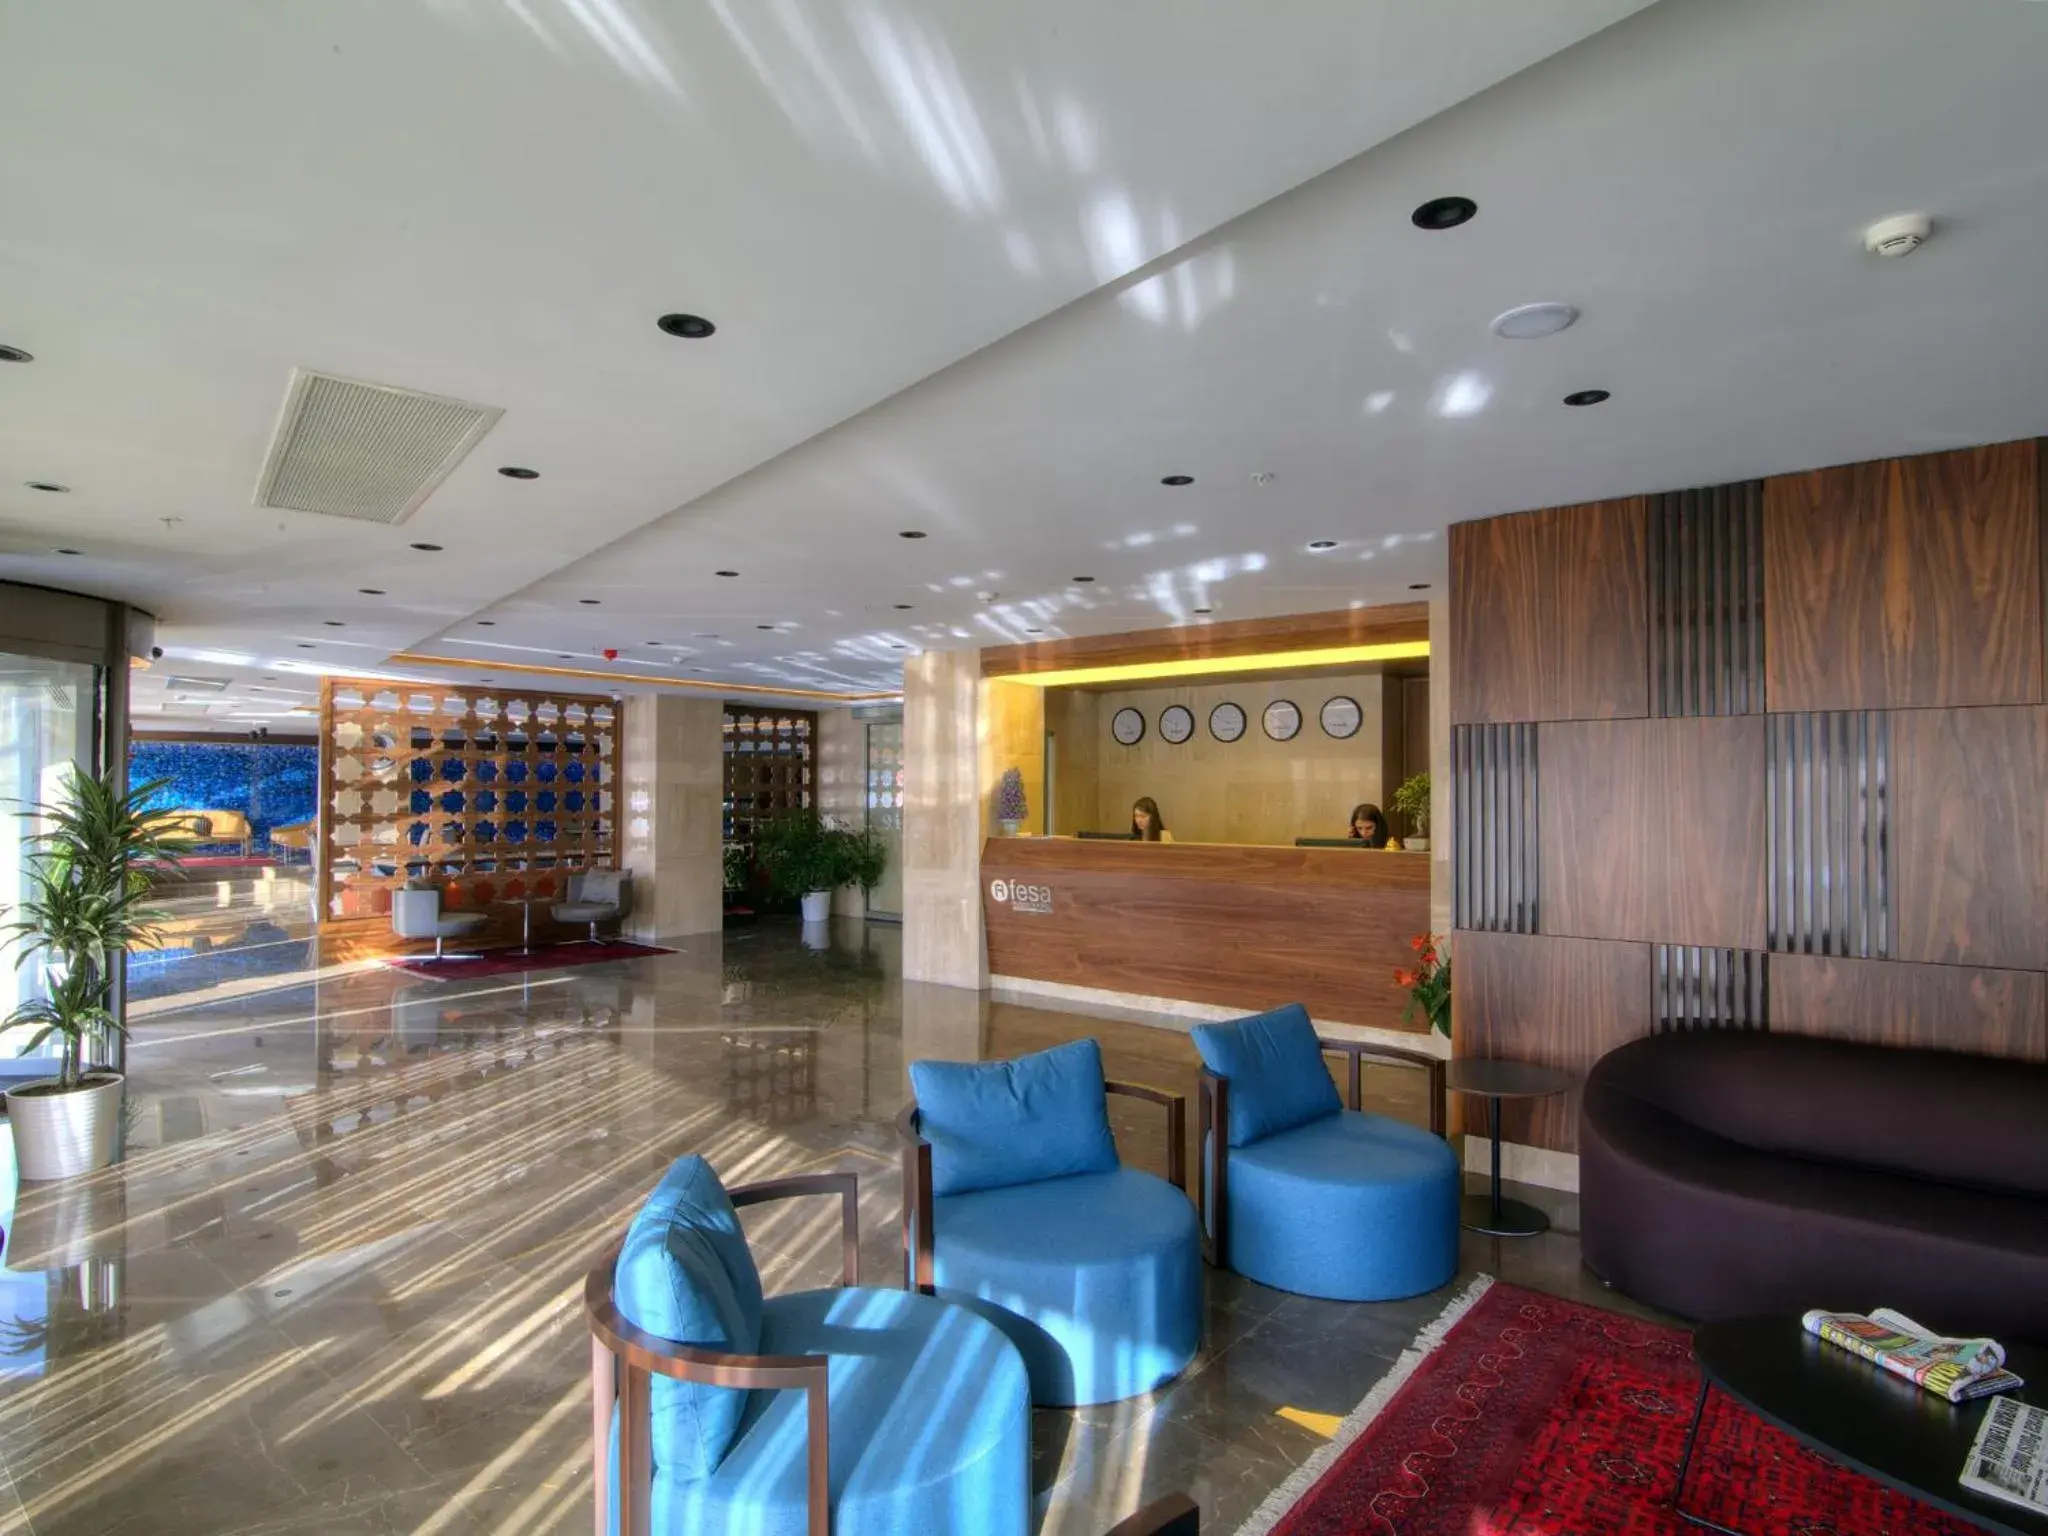 Lobby or reception, Lobby/Reception in Fesa Business Hotel